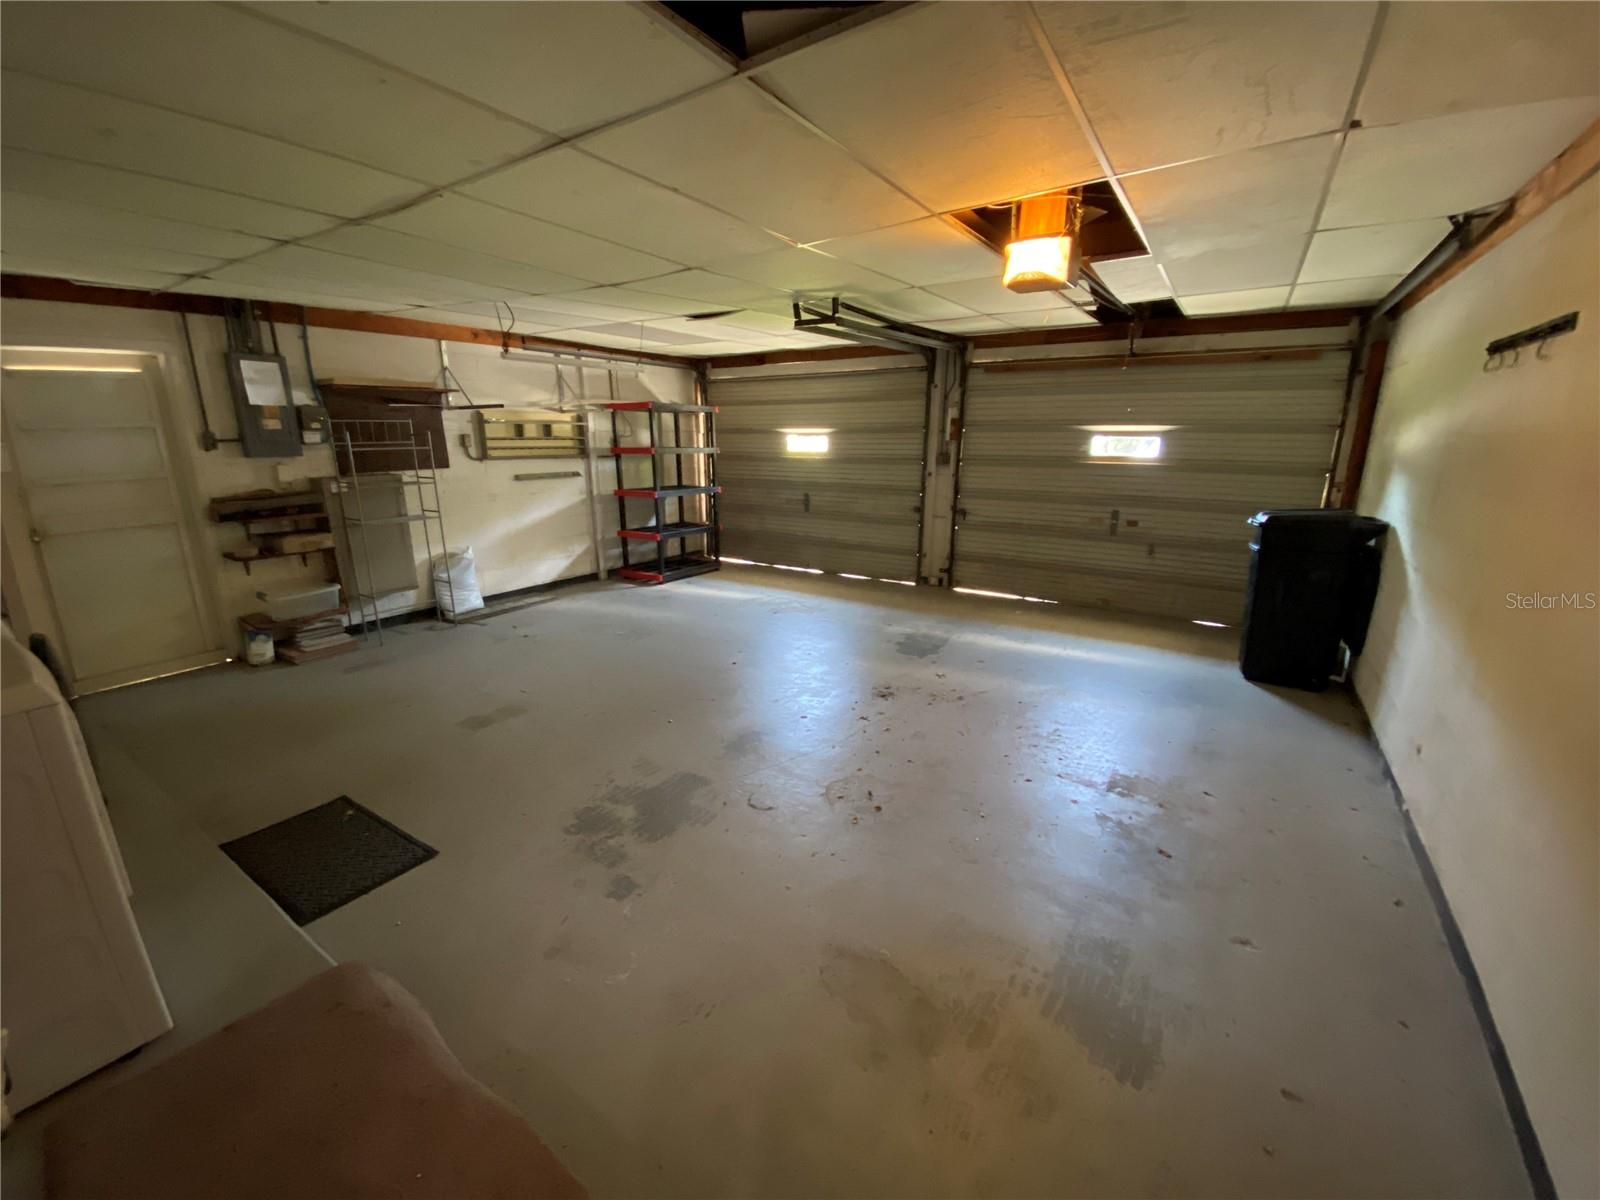 Garage from door in house